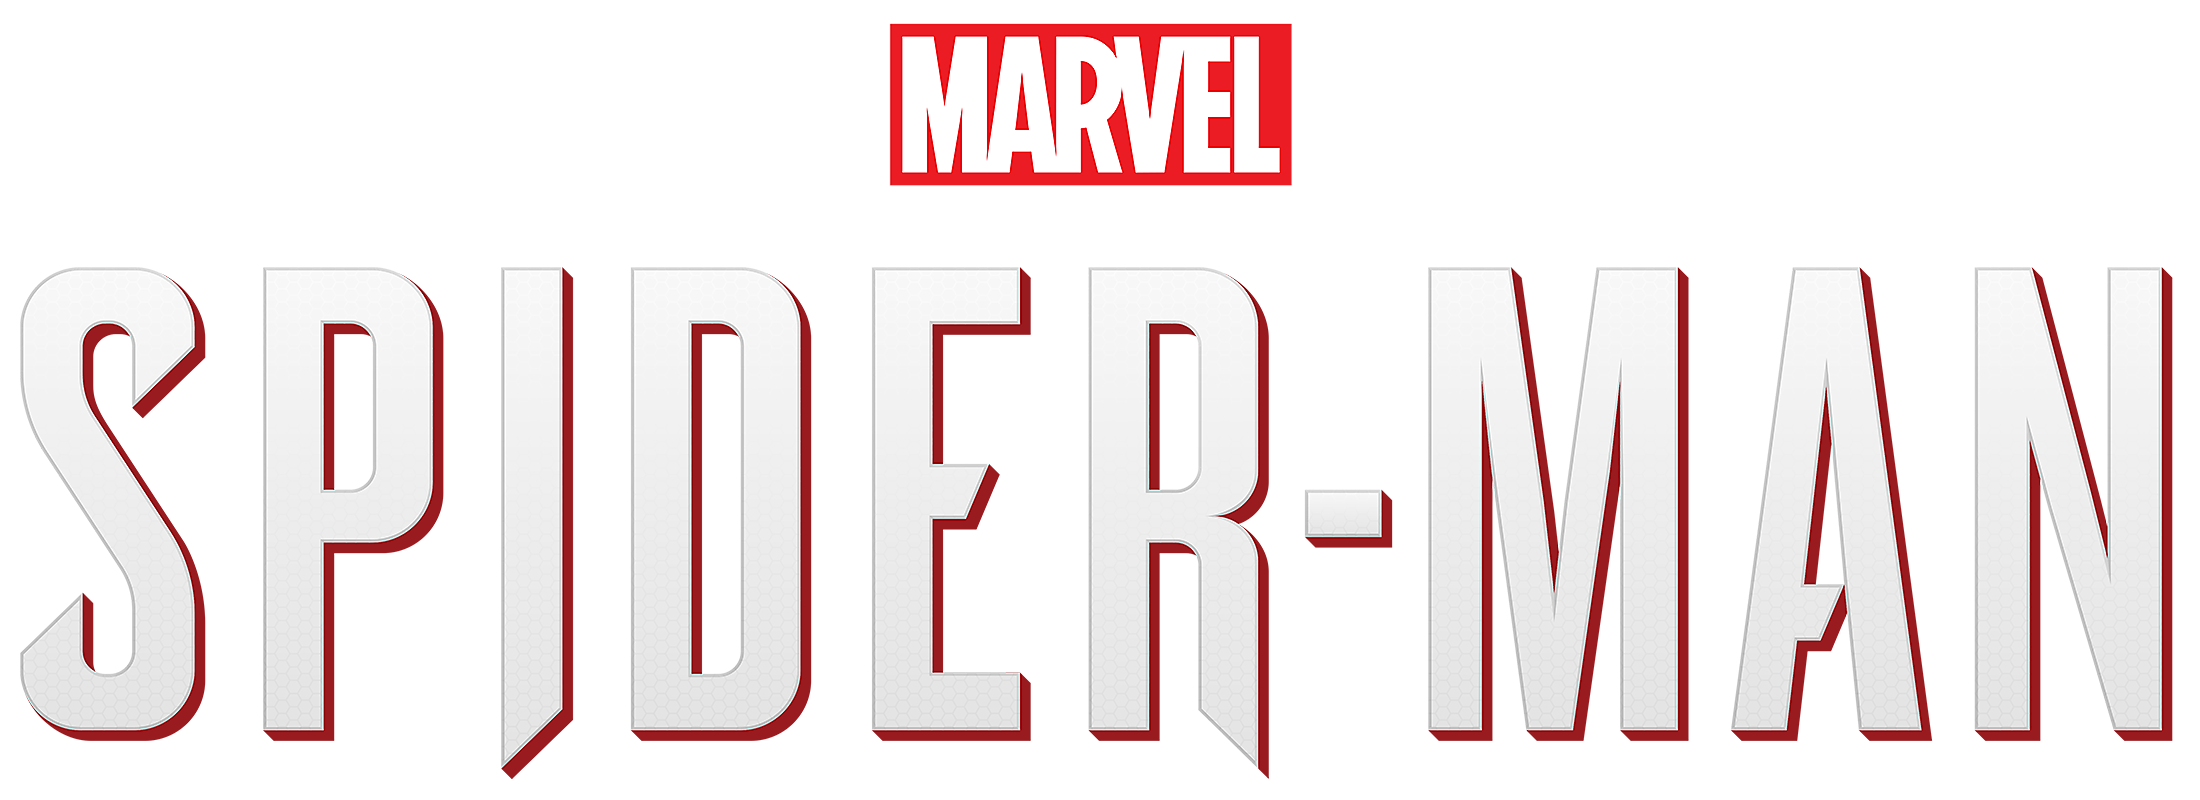 Marvel’s Spider-Man Download PNG Image